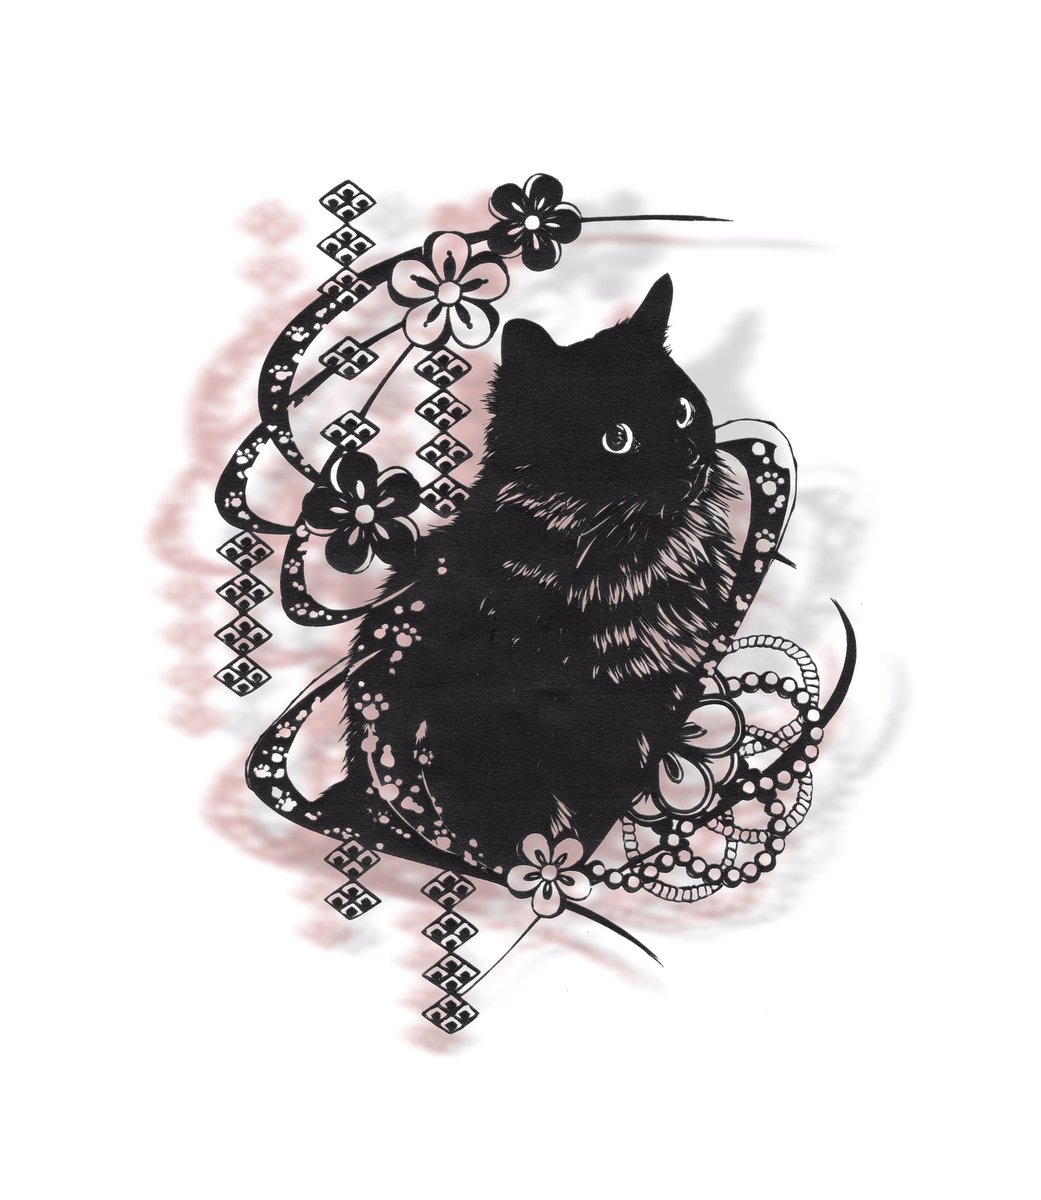 黒猫さんが黒いマットに完璧に擬態中 日常に潜むトラップを回避せよ ねこナビ